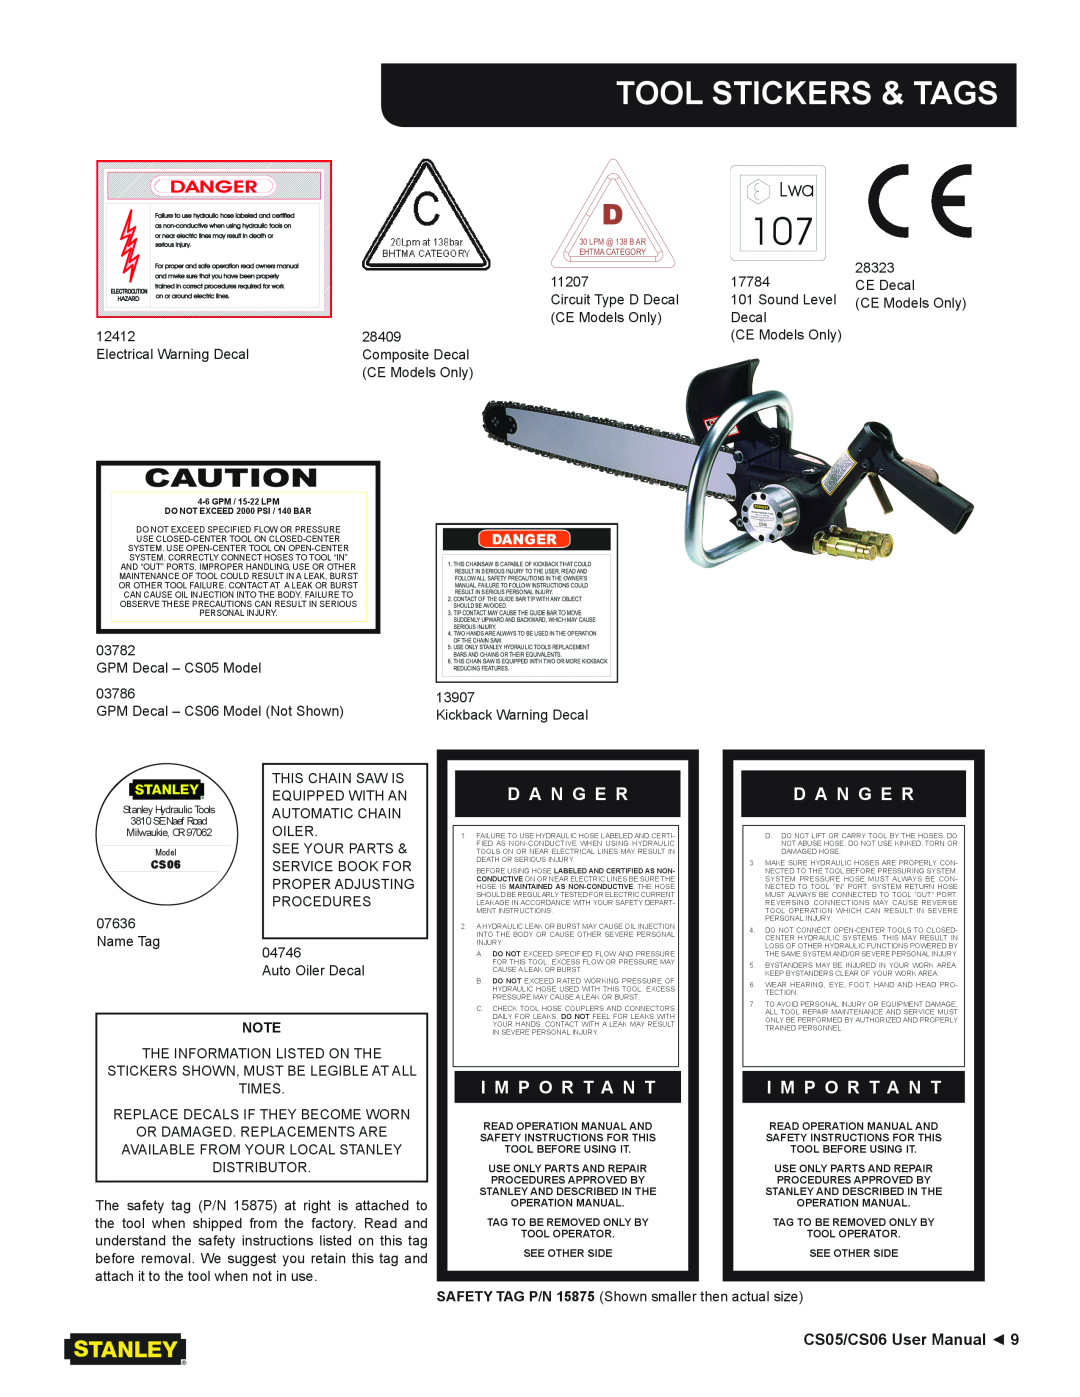 Stanley Black & Decker CS05/CS06 user manual Tool Stickers & Tags, Danger, D A N G E R, I M P O R T A N T 